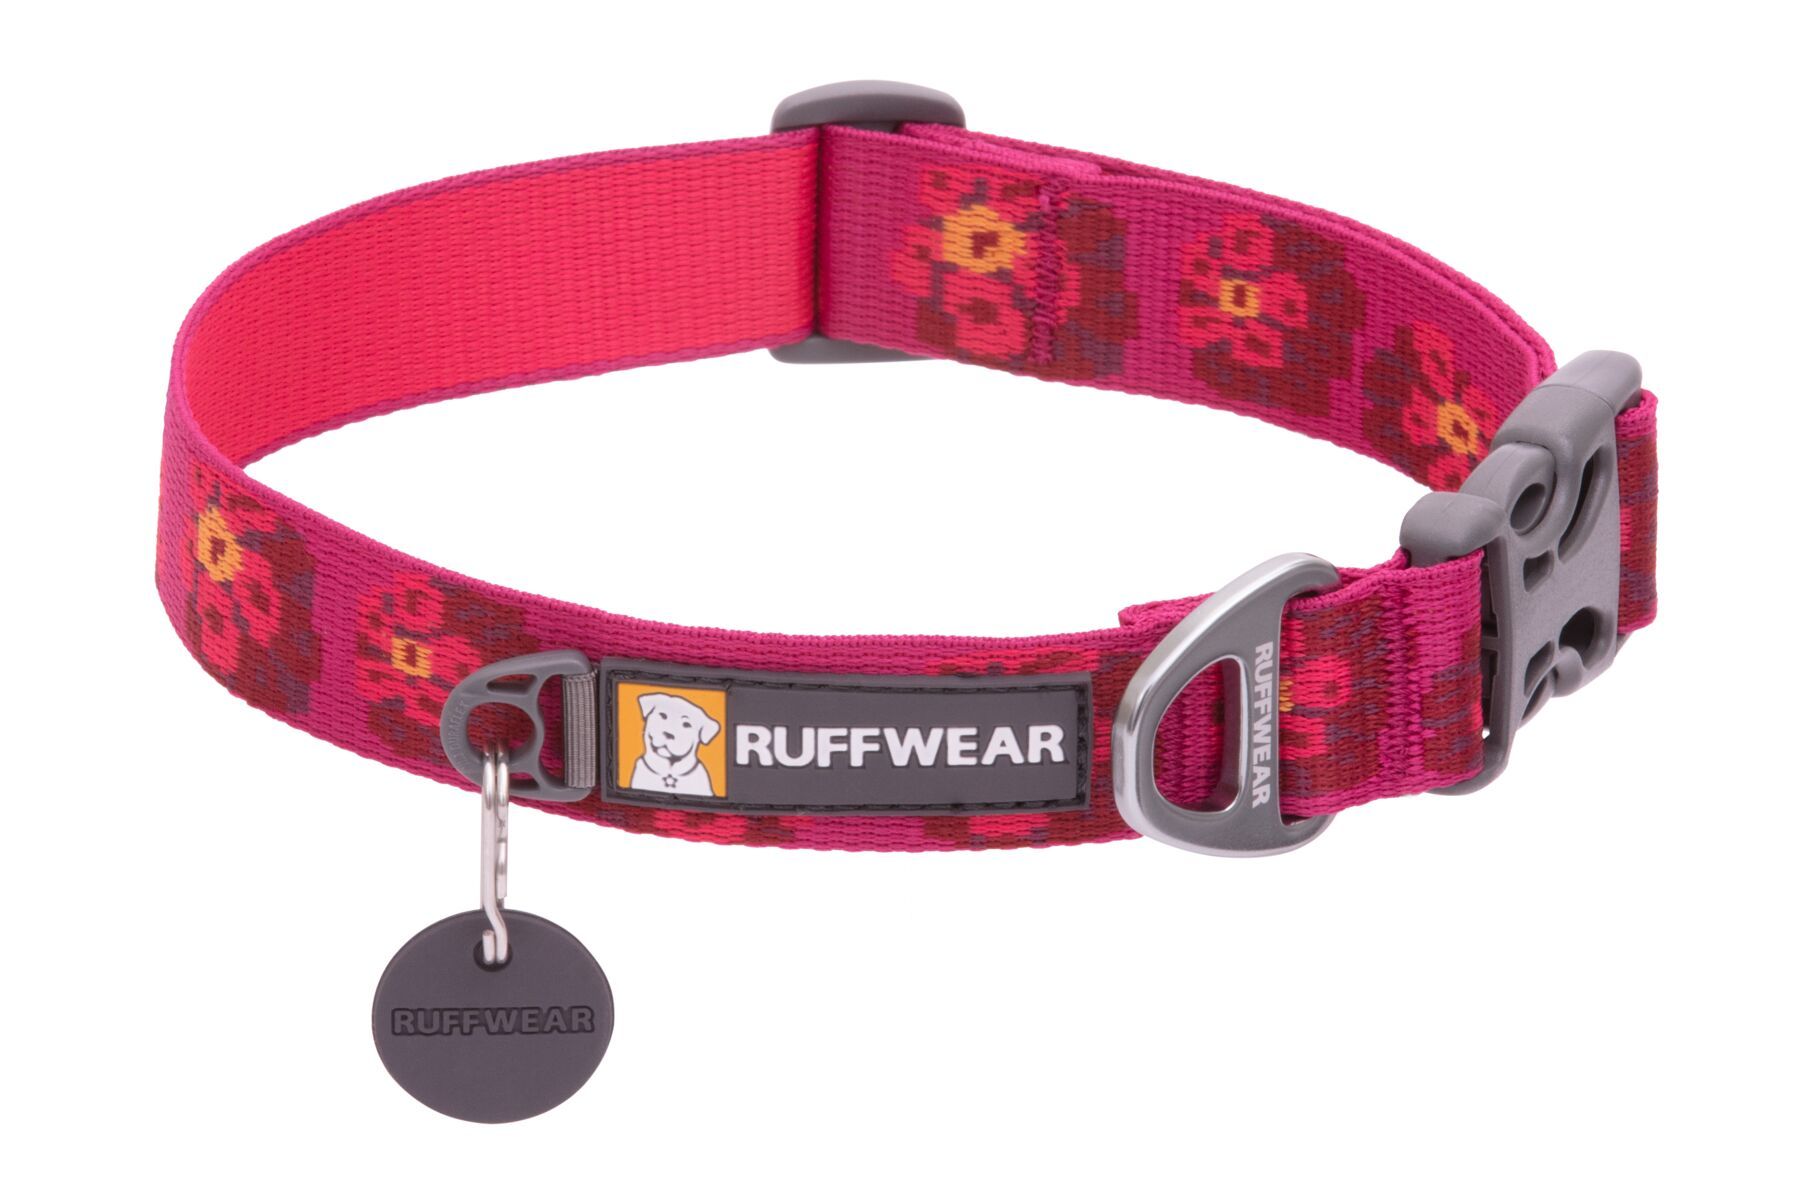 Ruffwear Flat Out™ Patterned Dog Collar